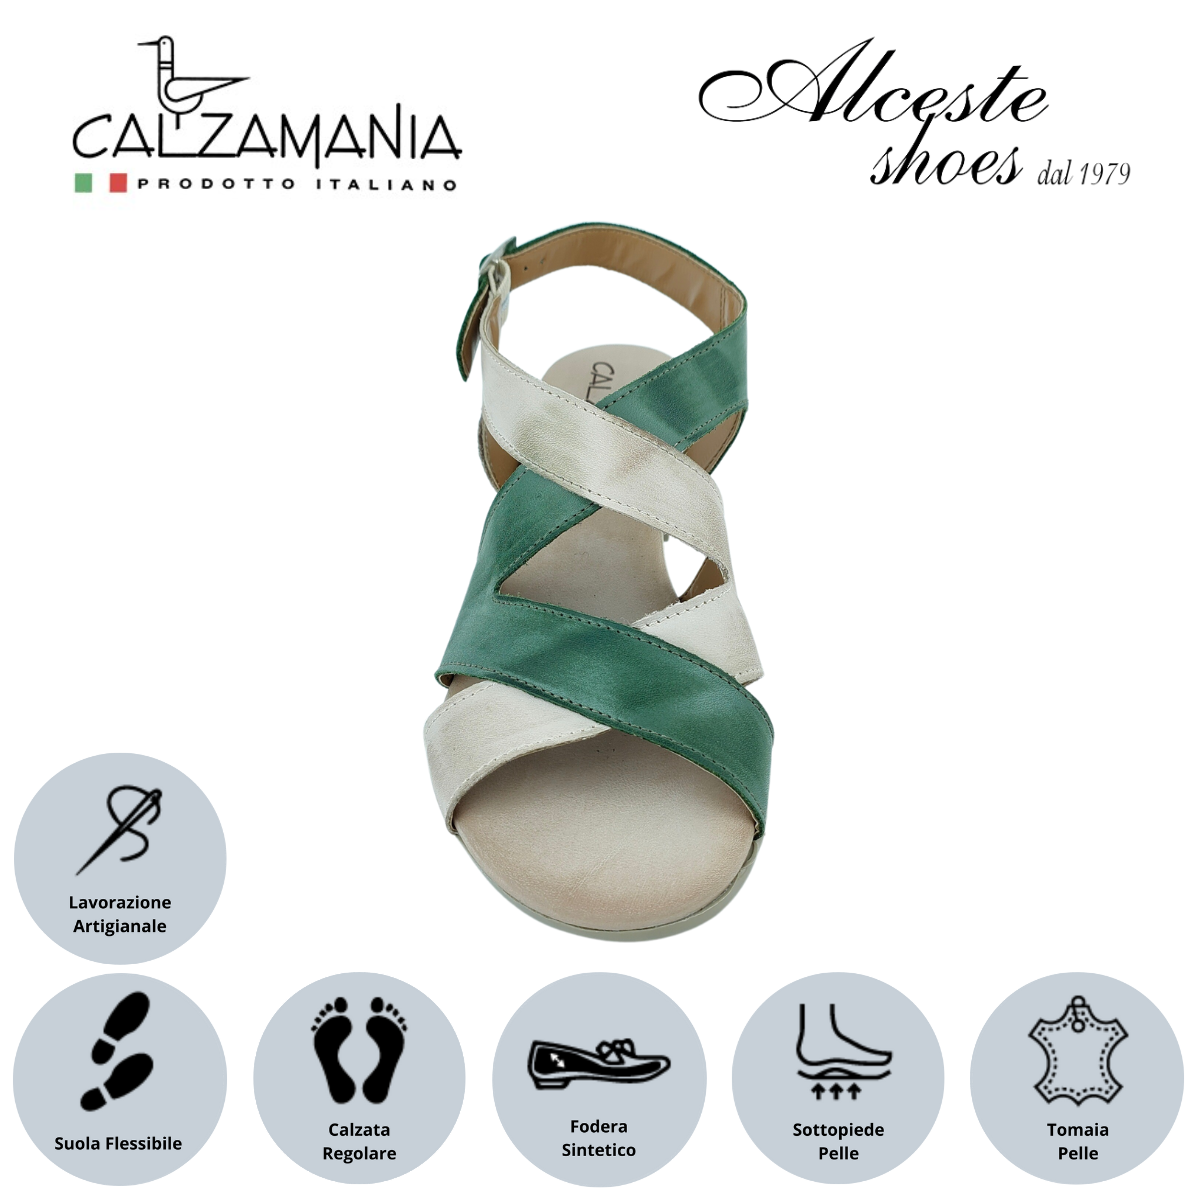 Sandalo Donna con Tacco 5 cm "Calzamania" Art. 23825 Pelle Nude e Muschio Alceste Shoes 17 1